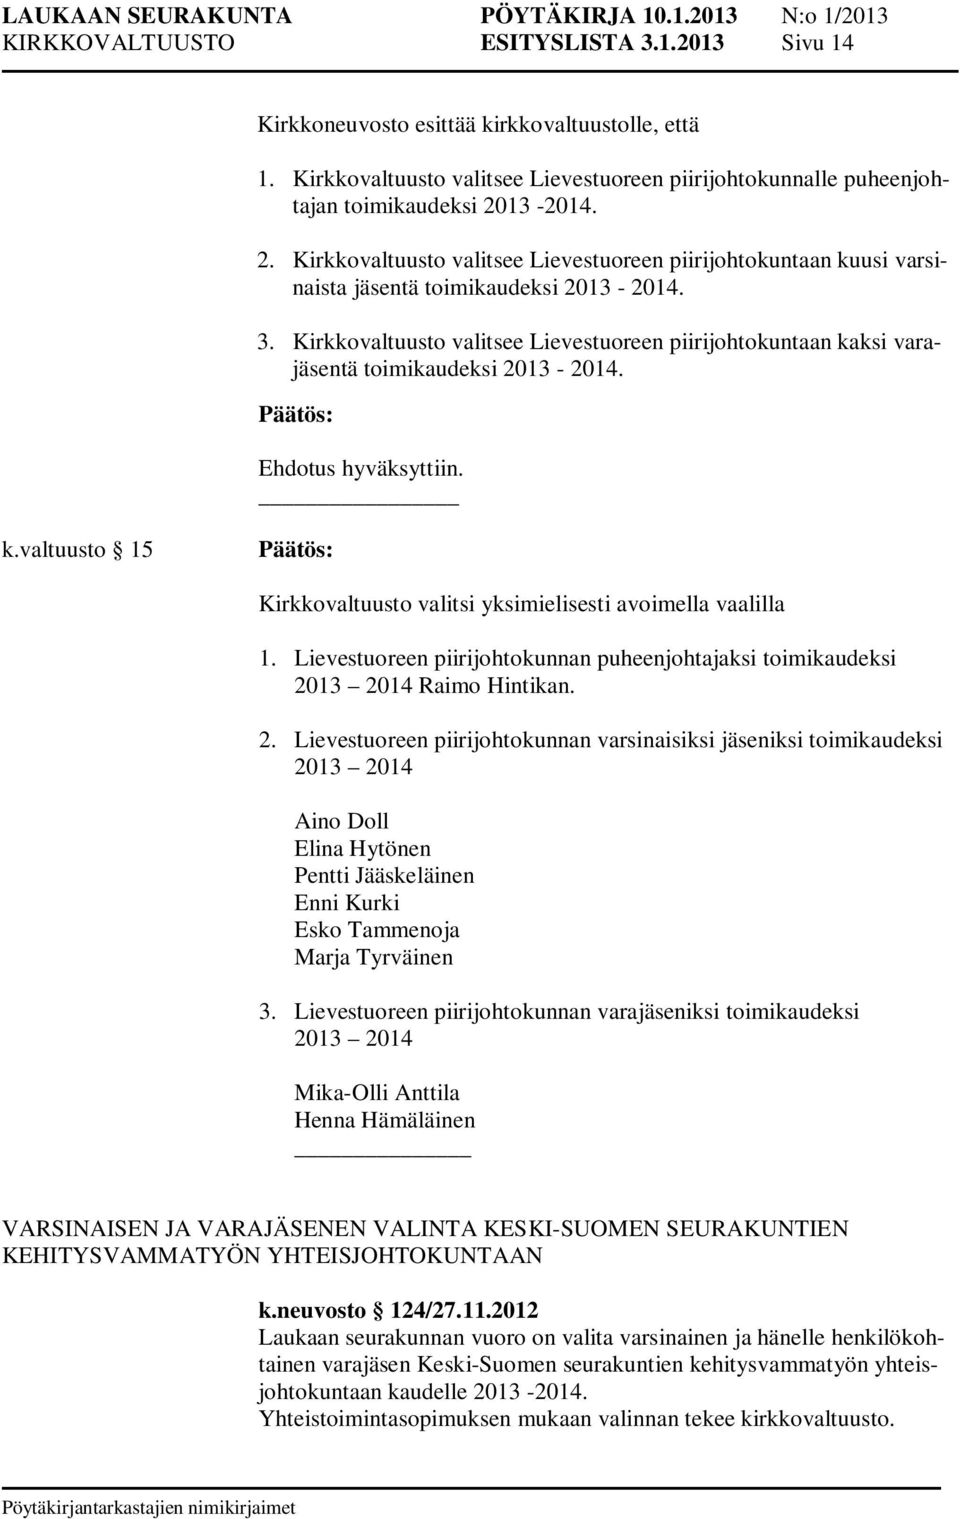 Kirkkovaltuusto valitsee Lievestuoreen piirijohtokuntaan kaksi varajäsentä toimikaudeksi 2013-2014. k.valtuusto 15 Kirkkovaltuusto valitsi yksimielisesti avoimella vaalilla 1.